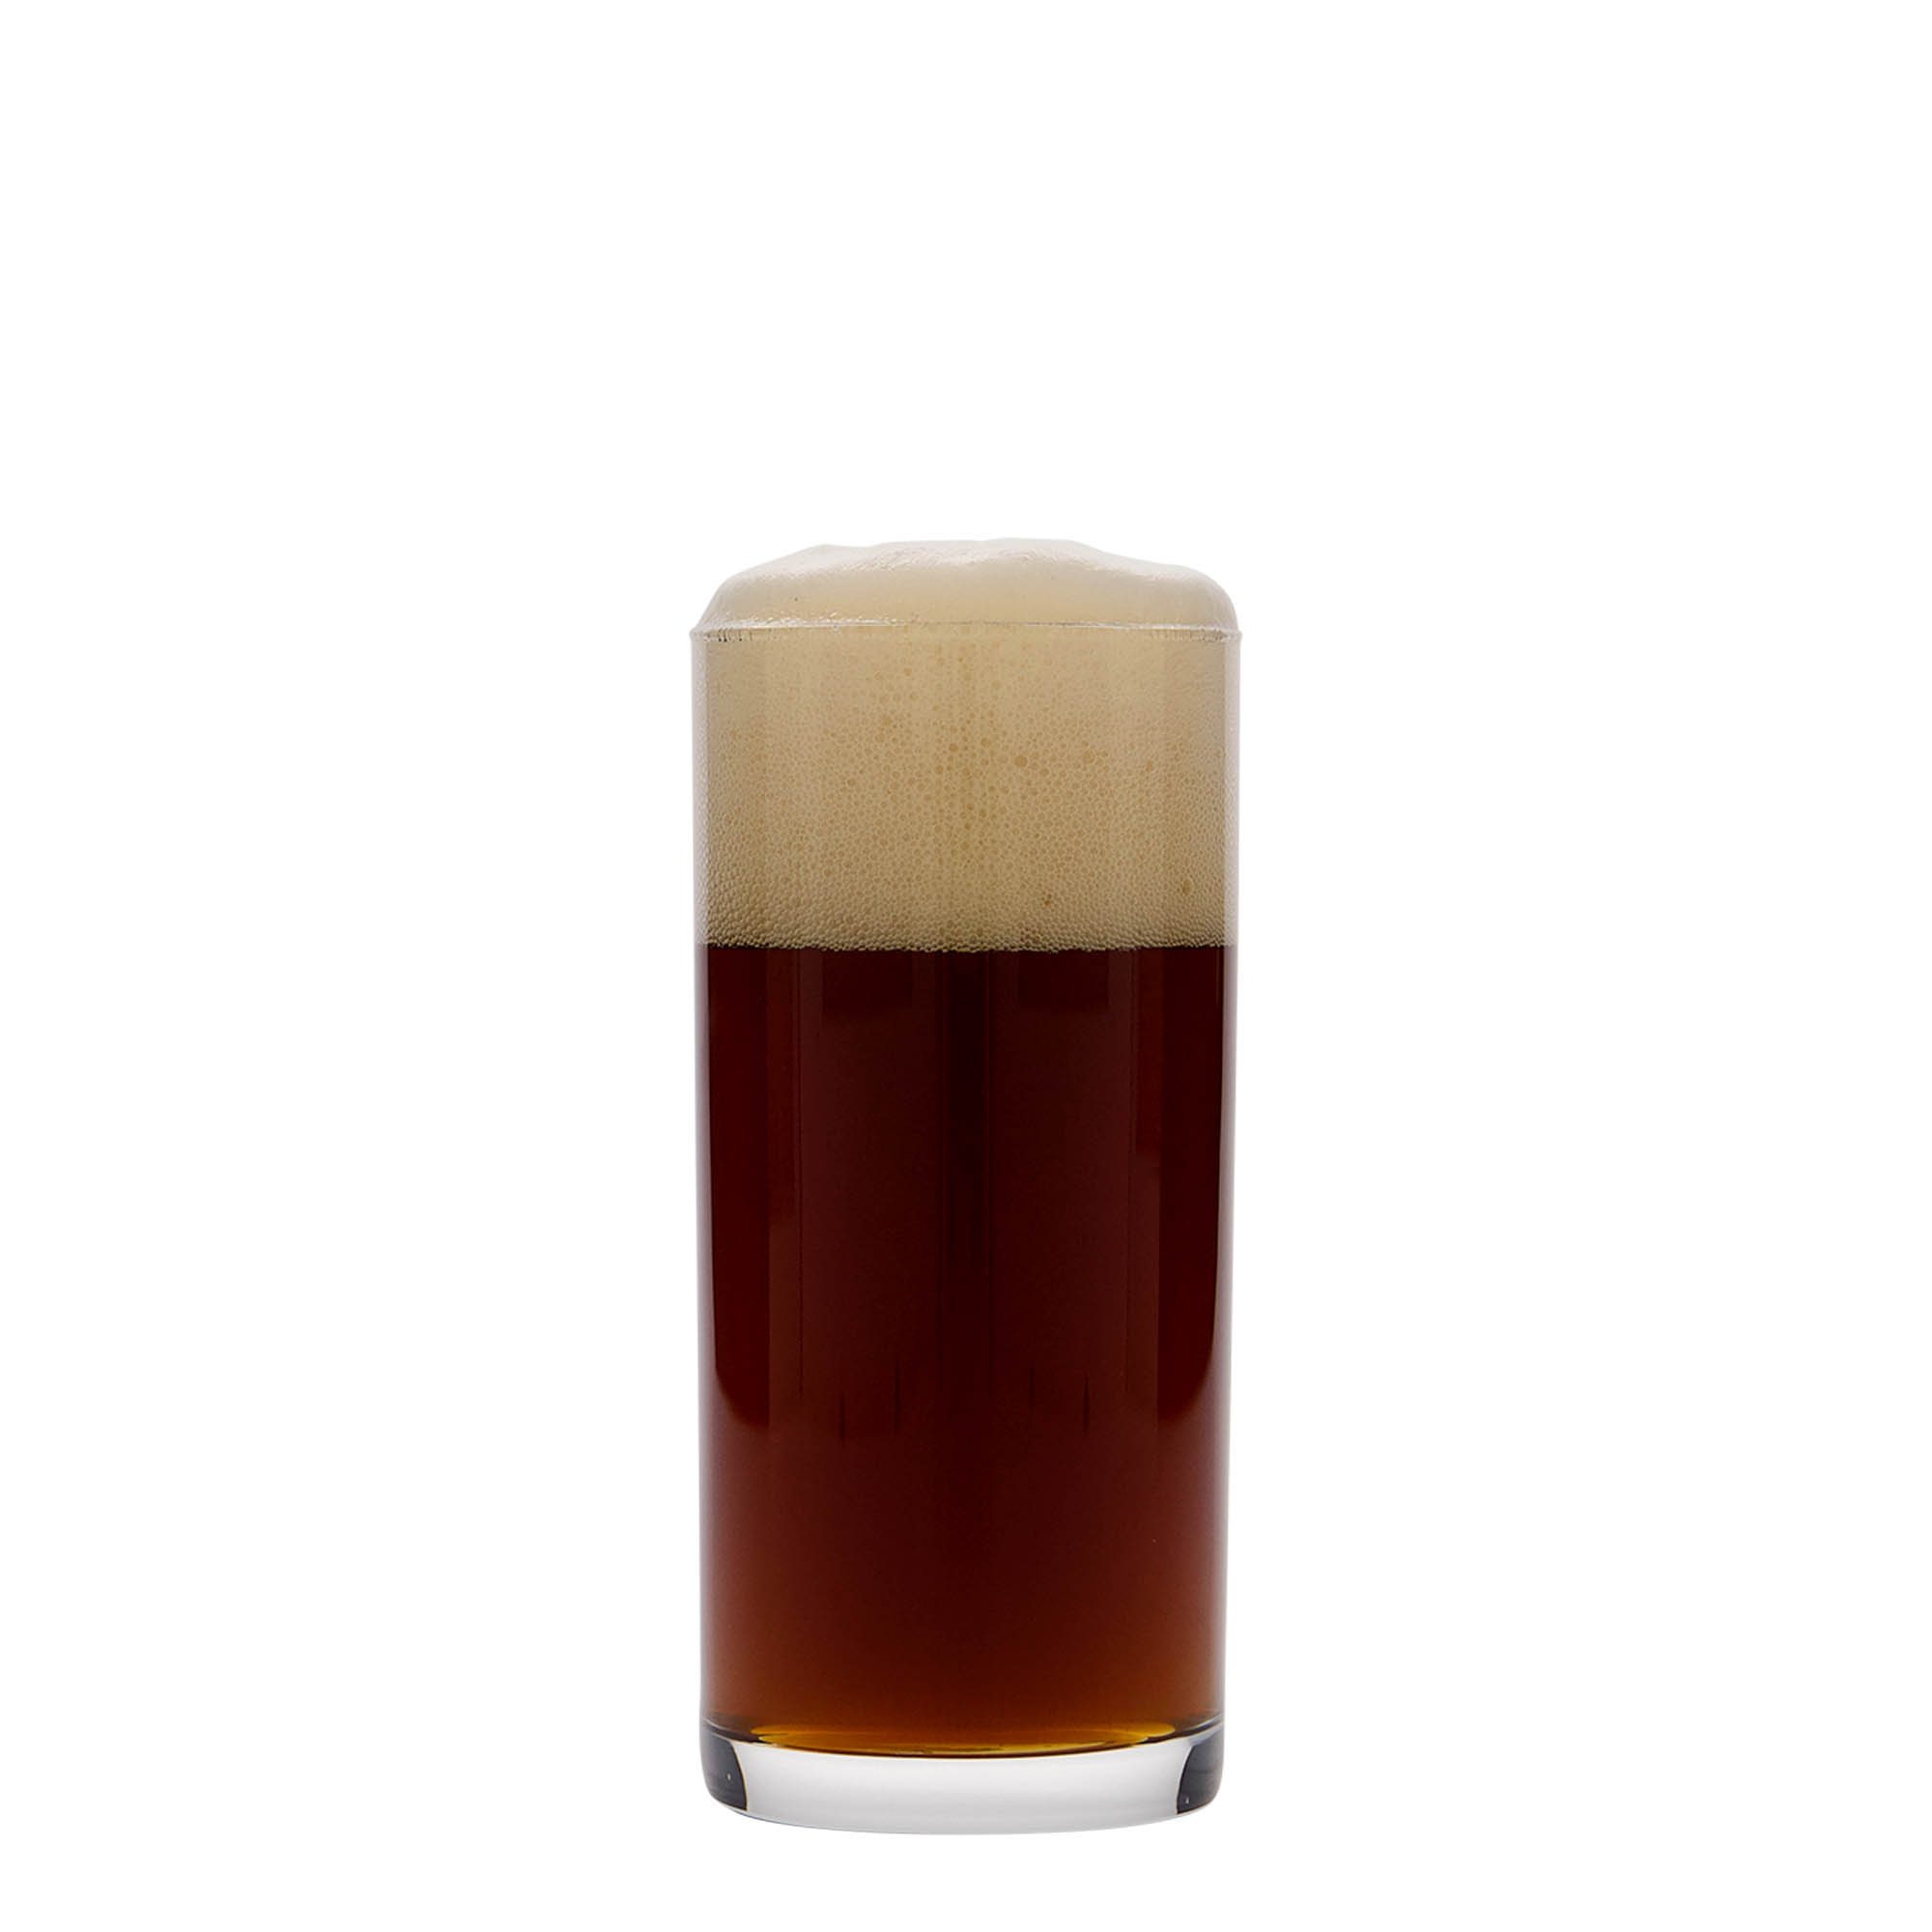 200 ml szklanka 'Stare piwo', szkło